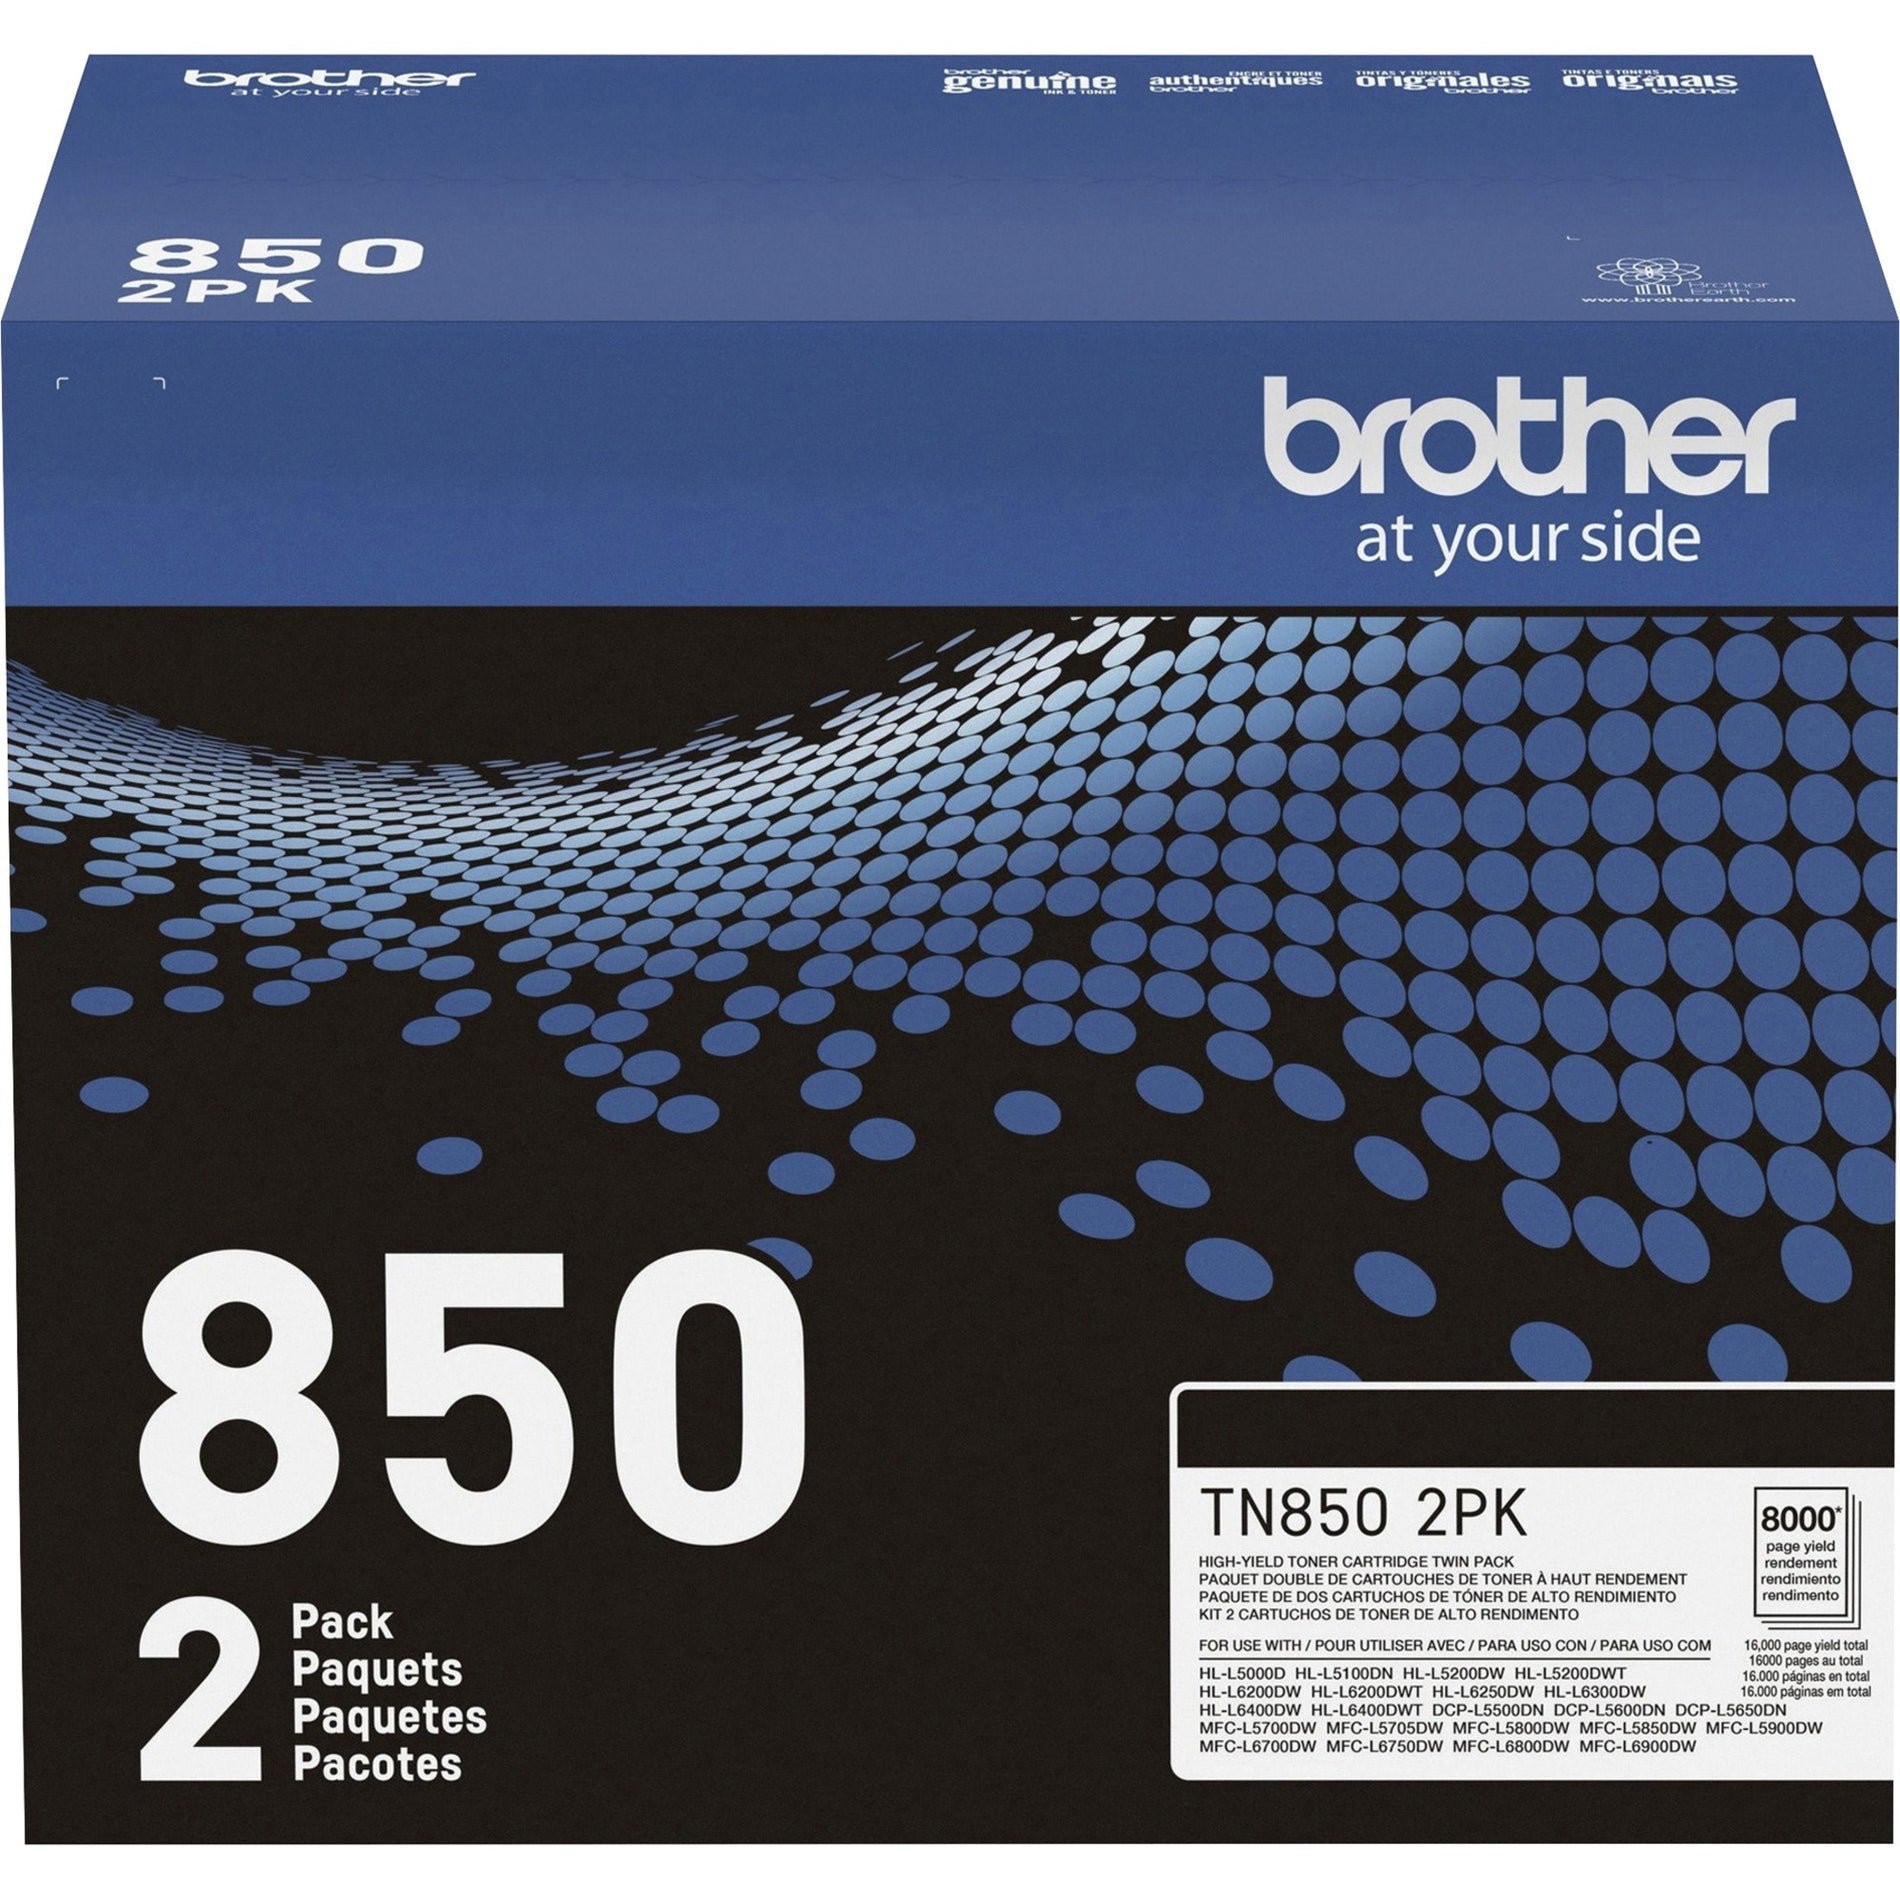 Hermano TN8502PK Cartucho de tóner de alto rendimiento paquete doble 8000 páginas negras.